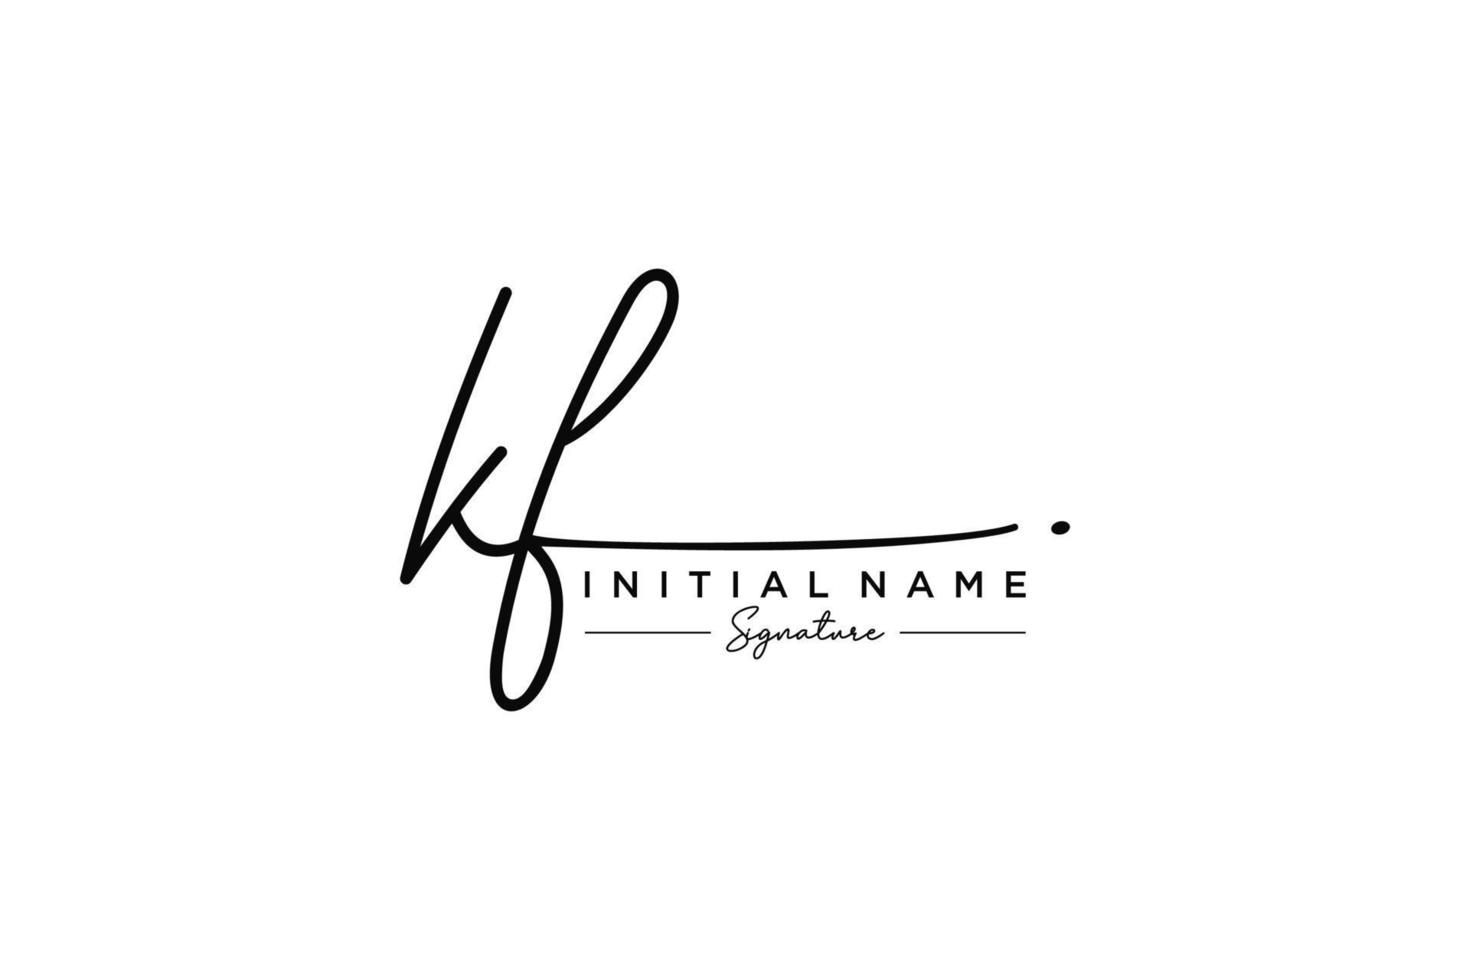 vecteur de modèle de logo de signature kf initial. illustration vectorielle de calligraphie dessinée à la main.